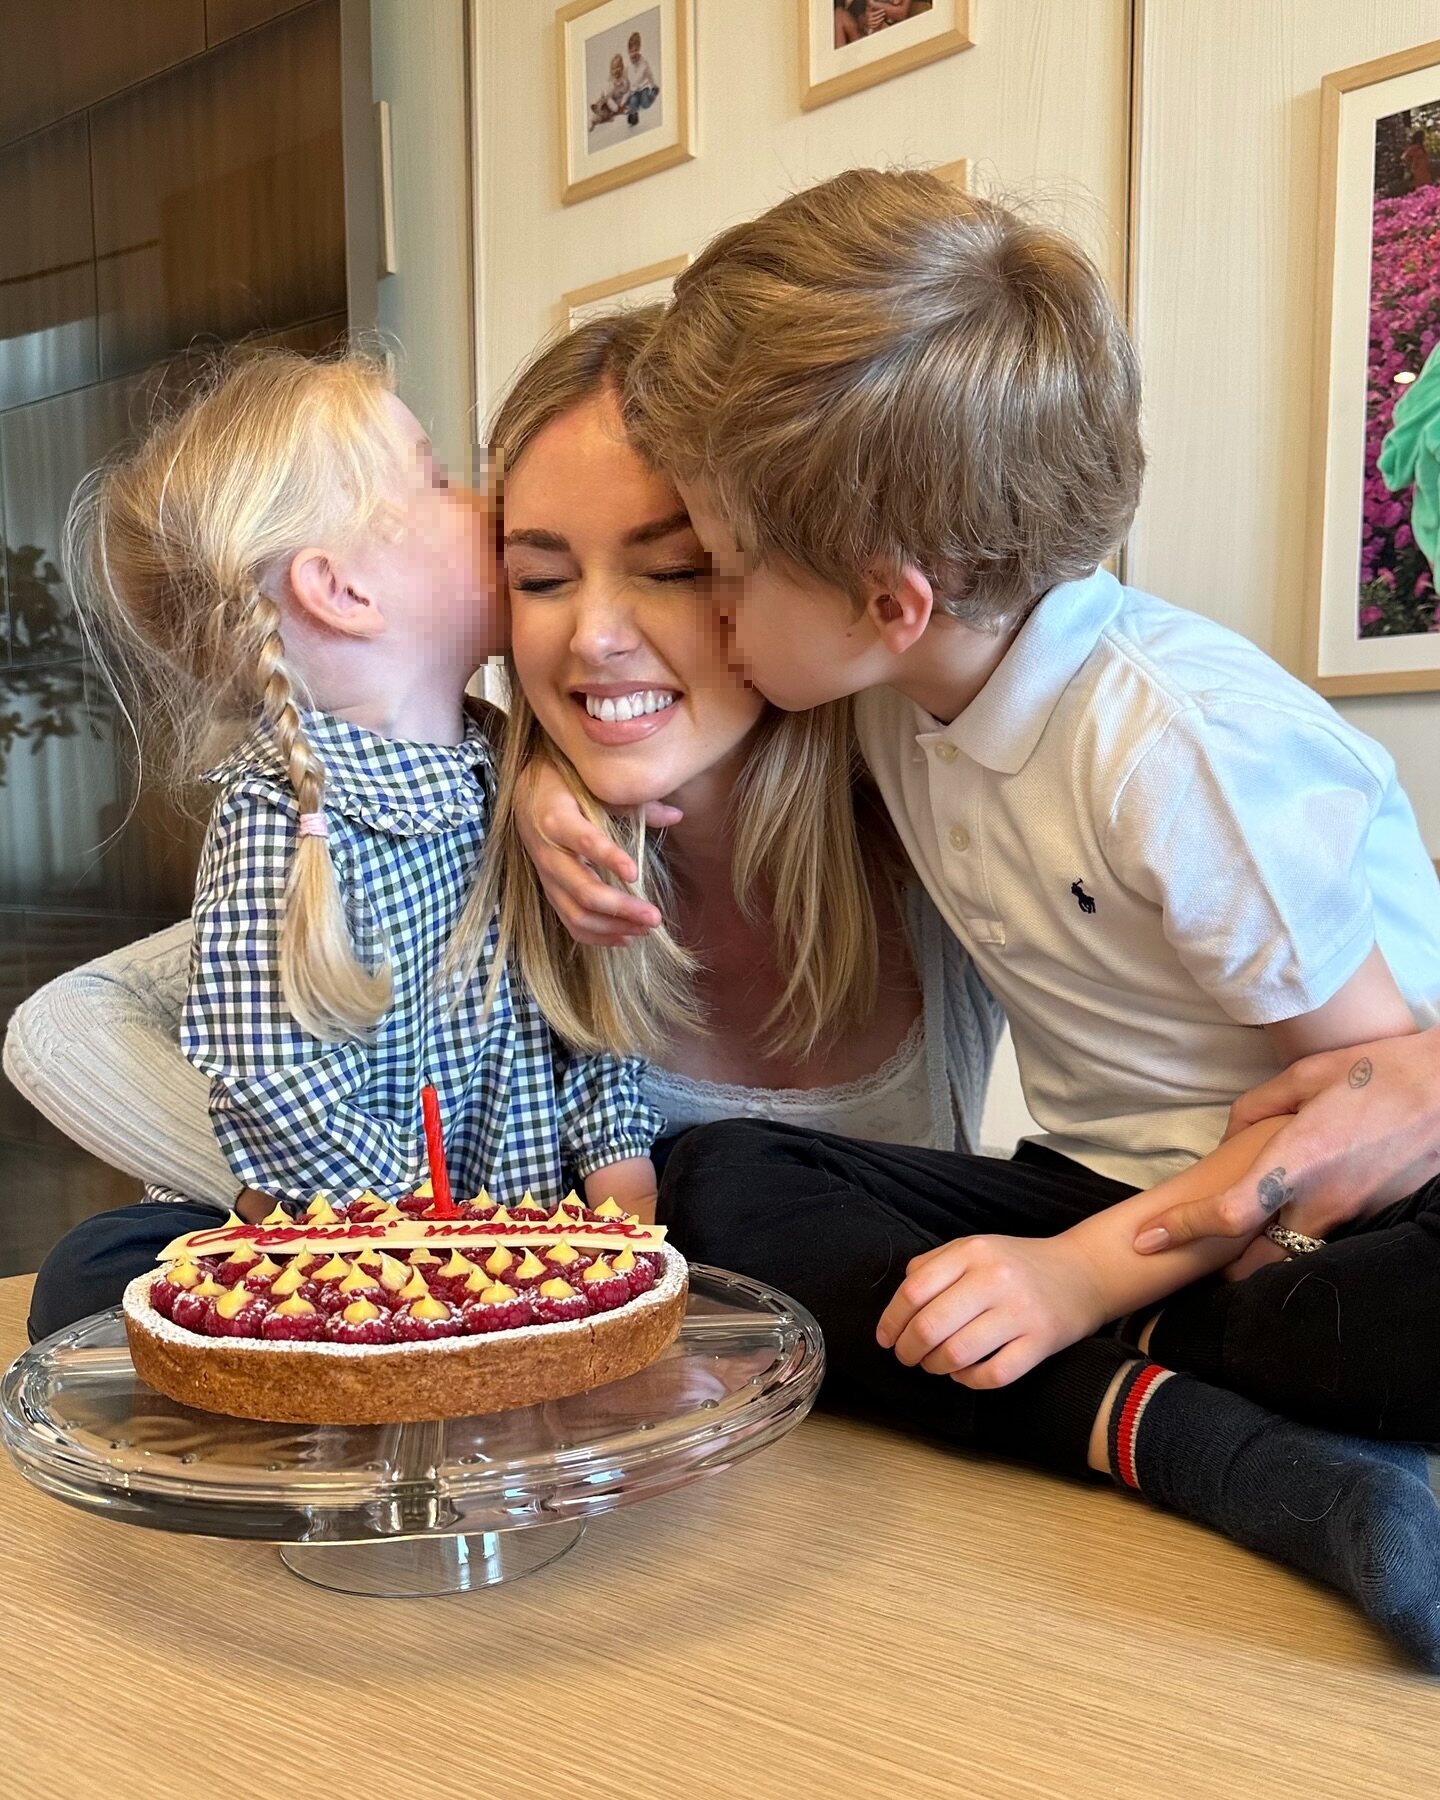 Chiara Ferragni celebrand su cumpleaños con sus dos hijos | Foto: Instagram